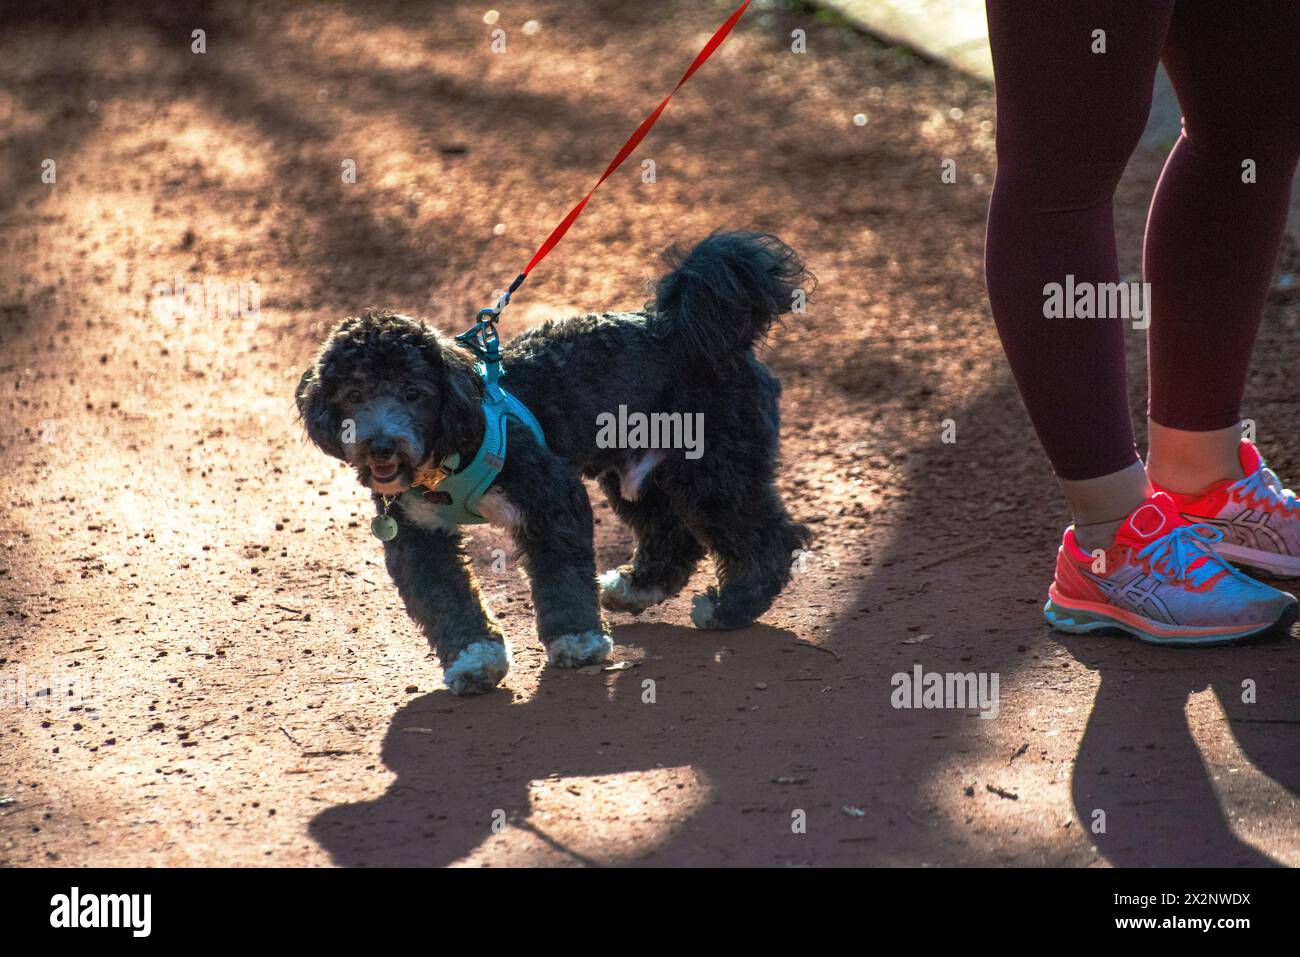 Un cane Maltipoo accompagna con gioia la sua donna proprietaria in una corsa mattutina, favorendo un legame di salute e compagnia. Foto Stock